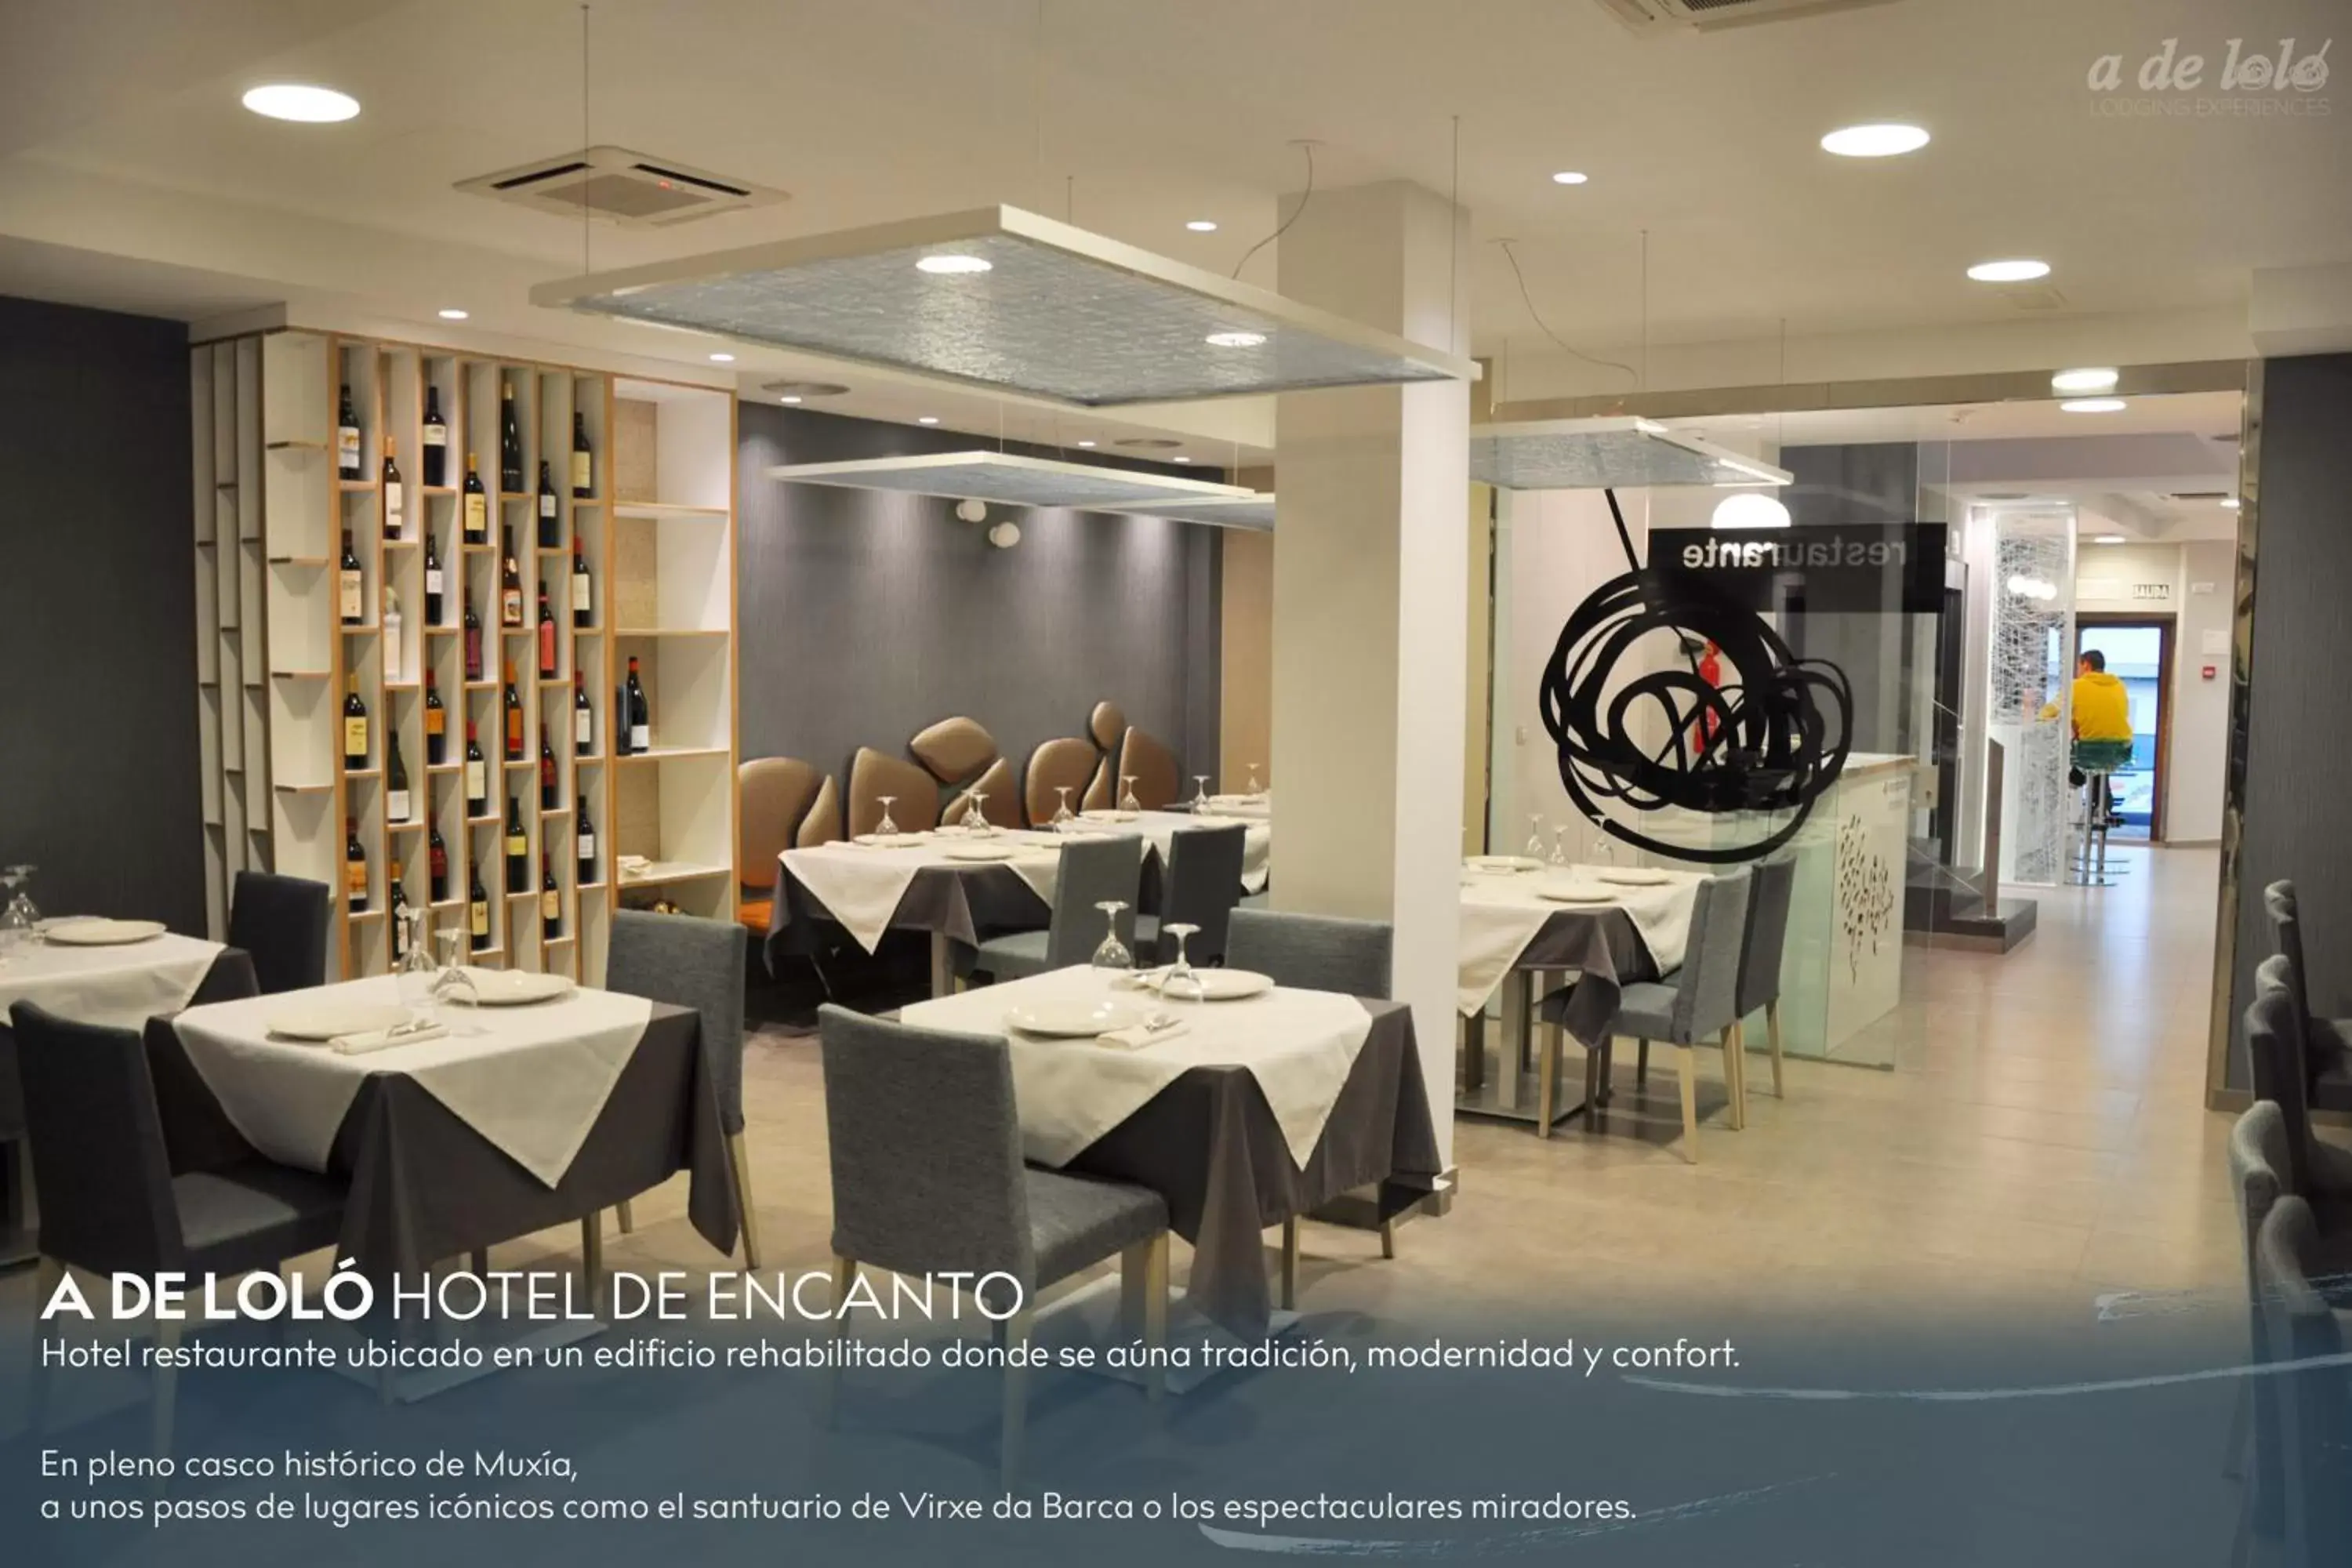 Restaurant/Places to Eat in A de Loló Alojamiento con encanto